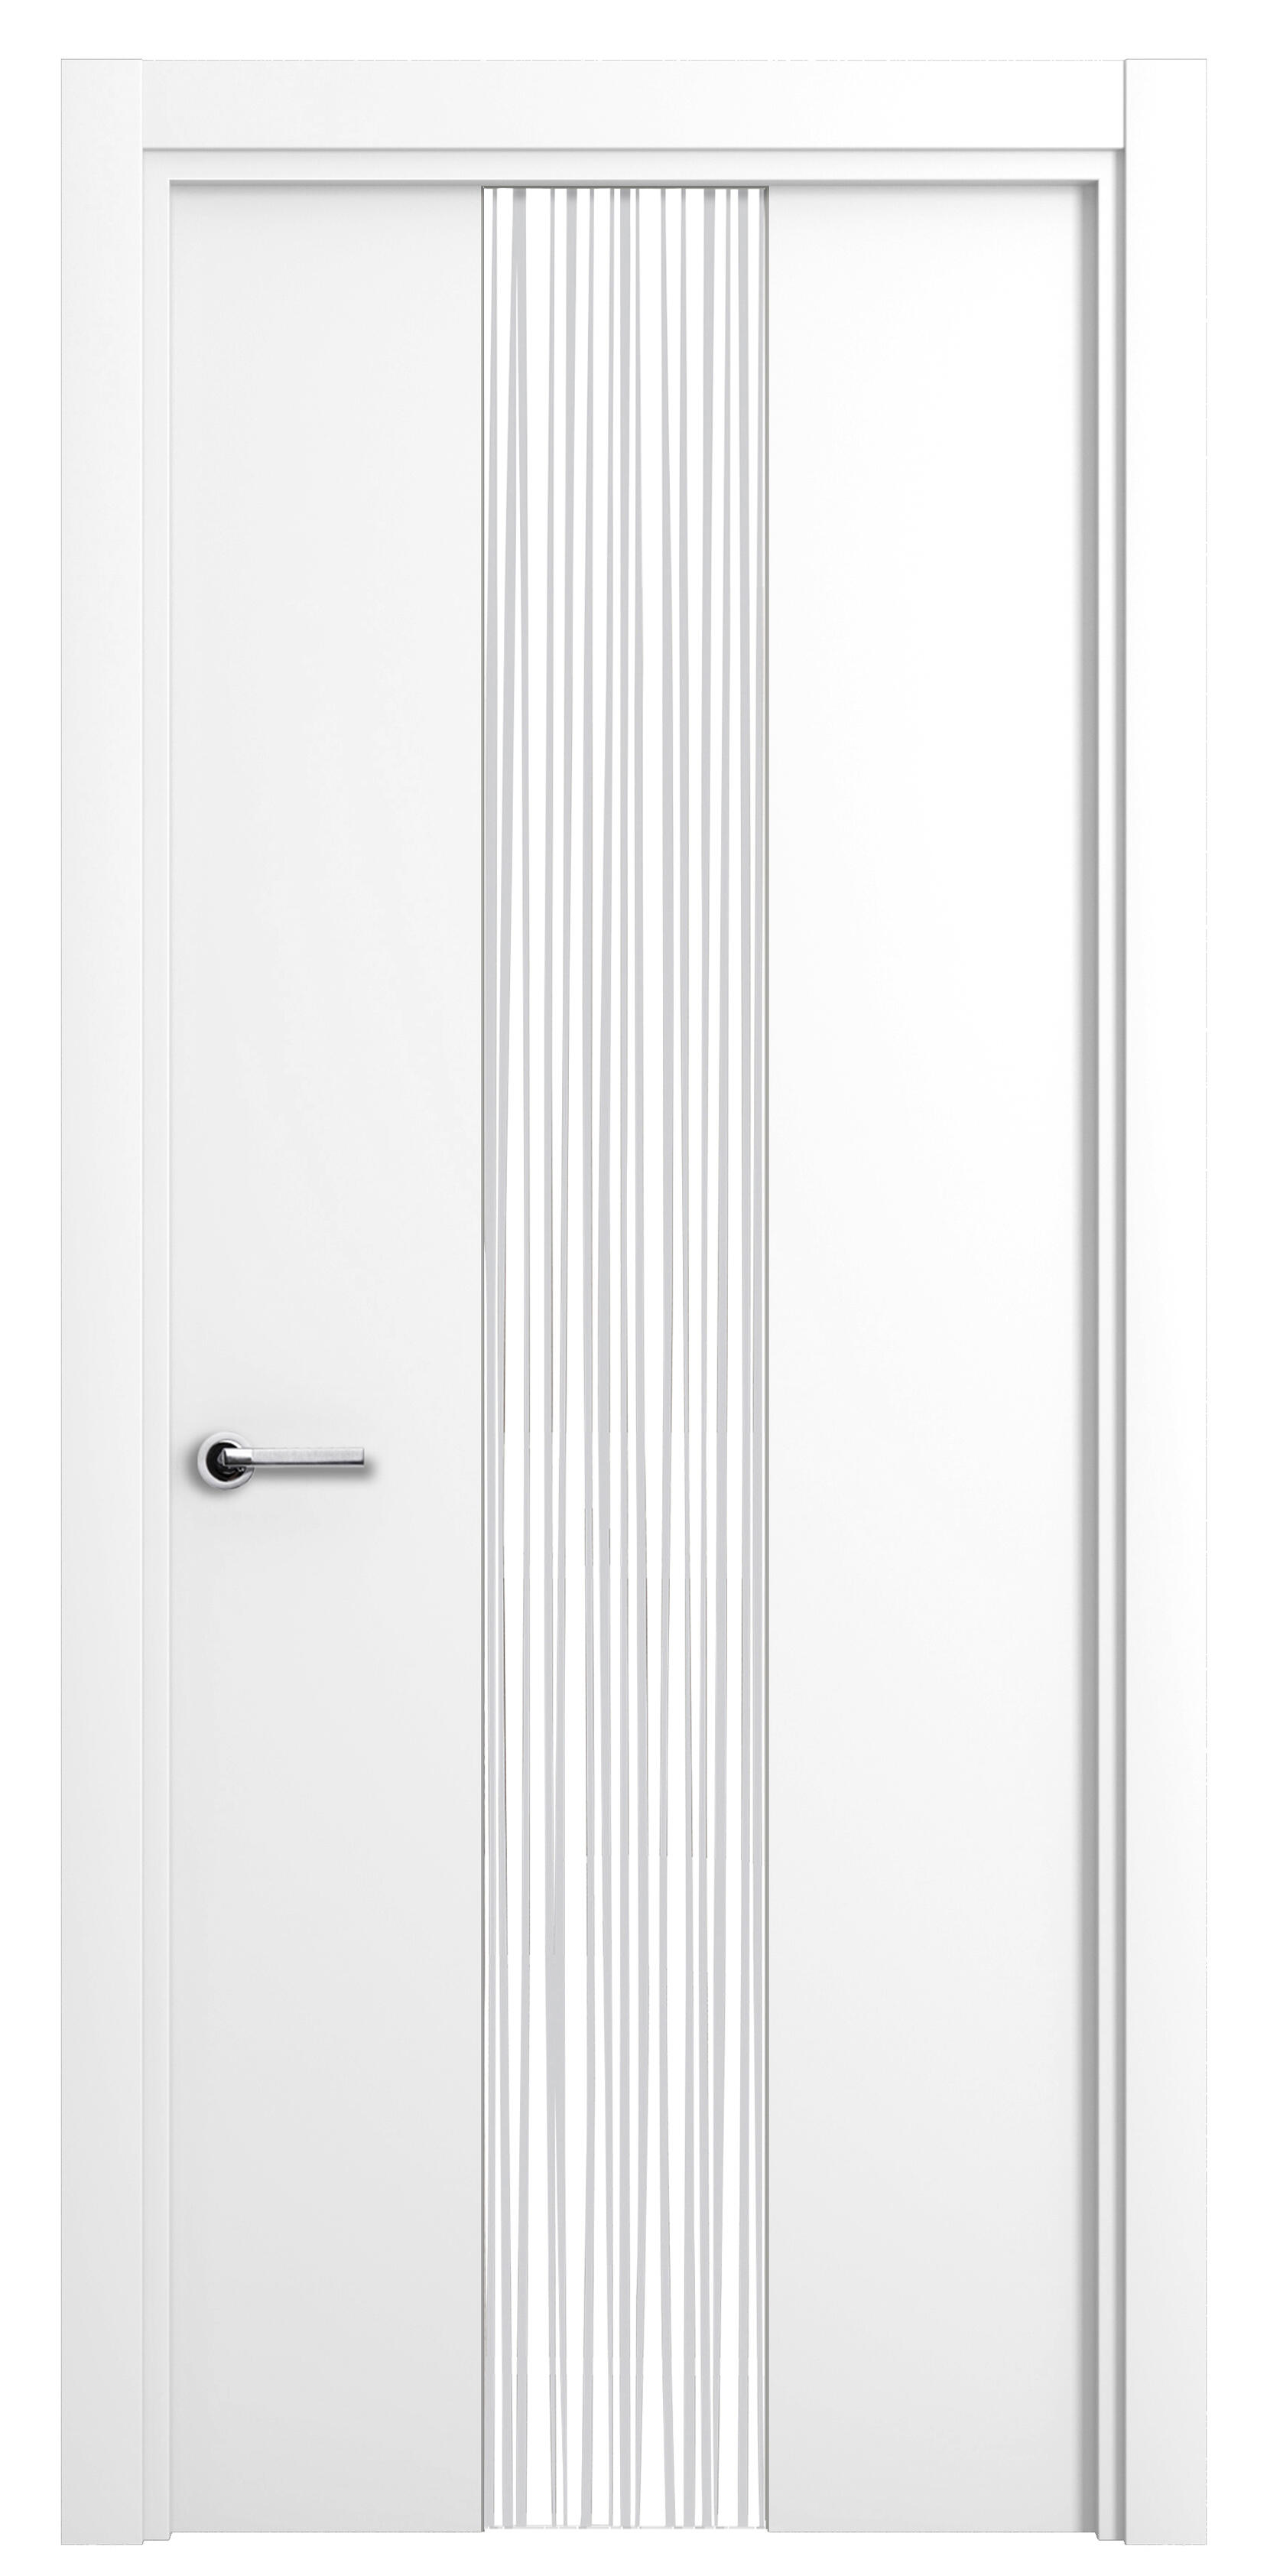 Puerta abatible quevedo blanca premium con cristal blanco derecha de 62.5 cm